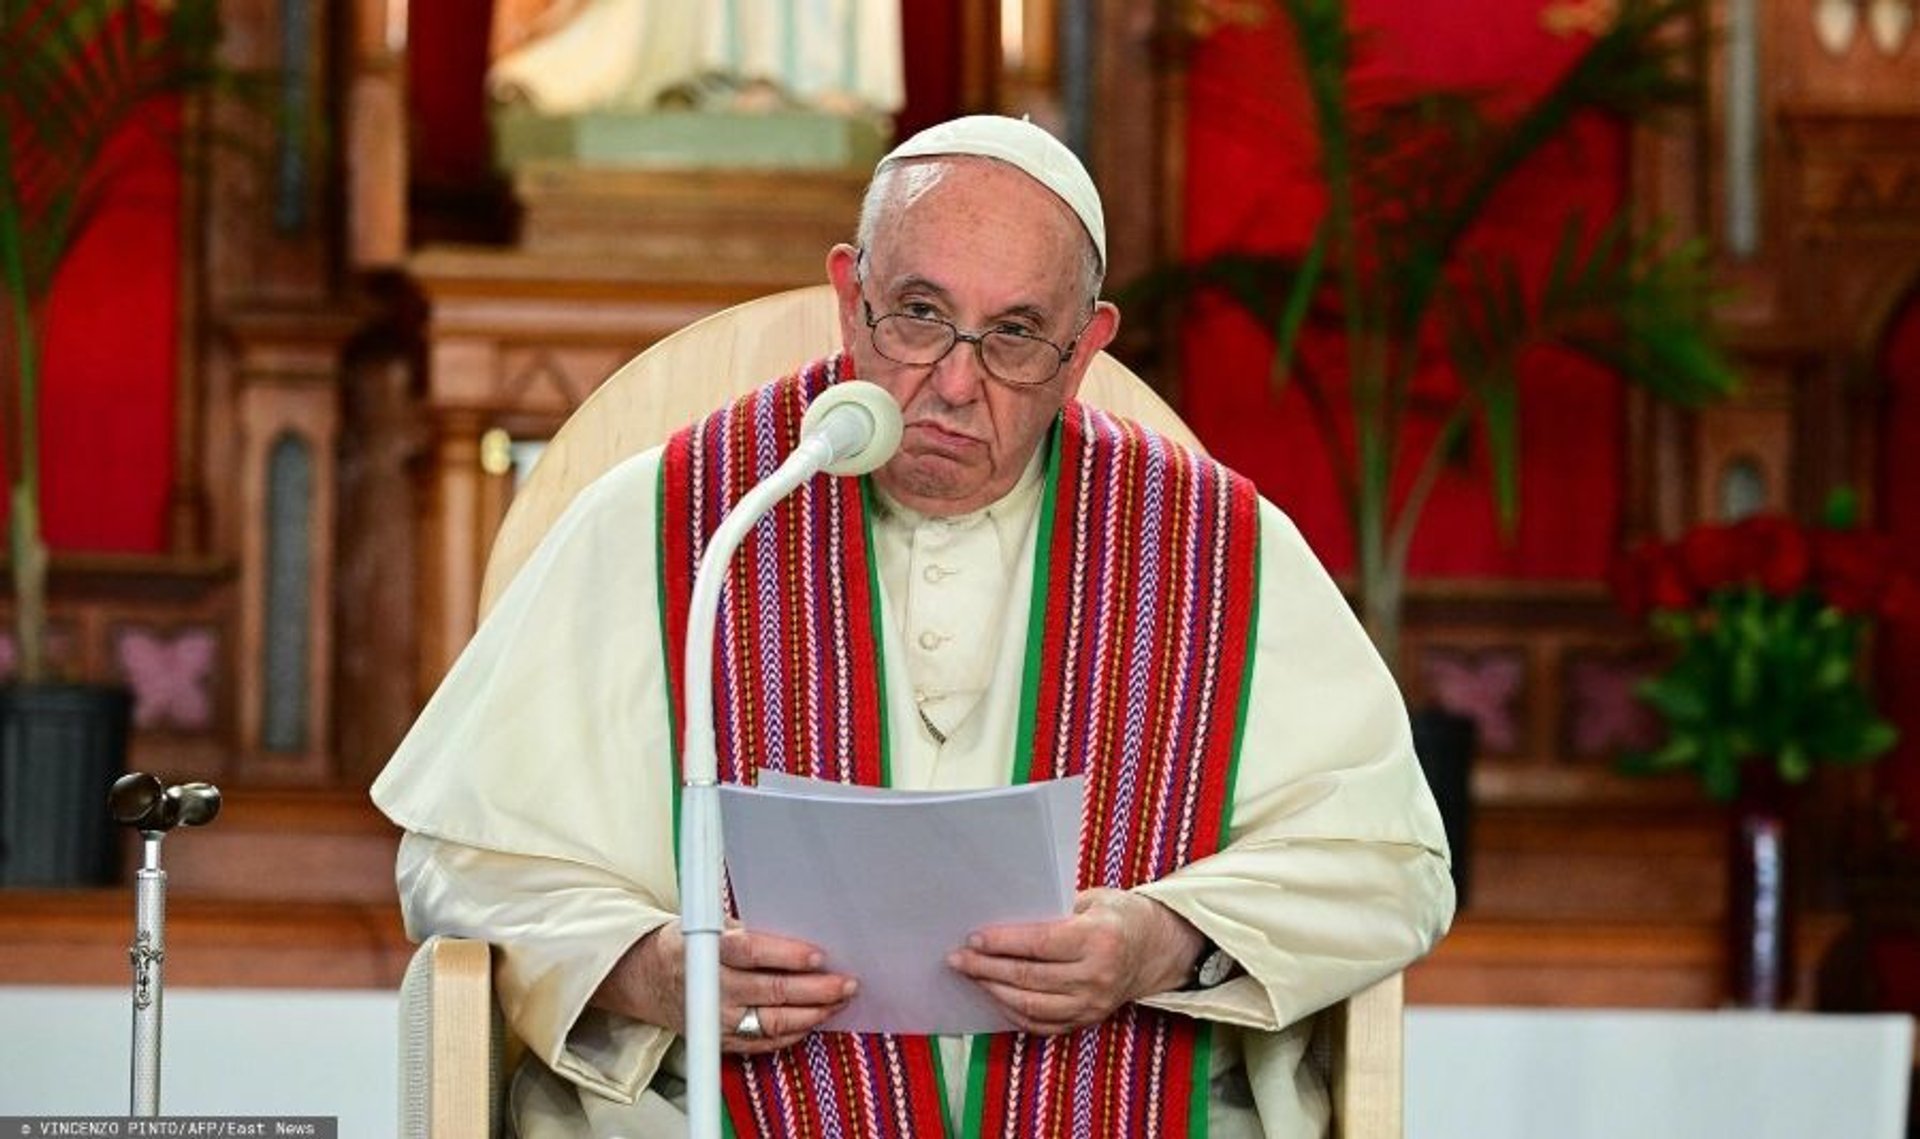 Papież Franciszek szokuje wyznaniem o Duginie. "Myślę o tej biednej dziewczynie"